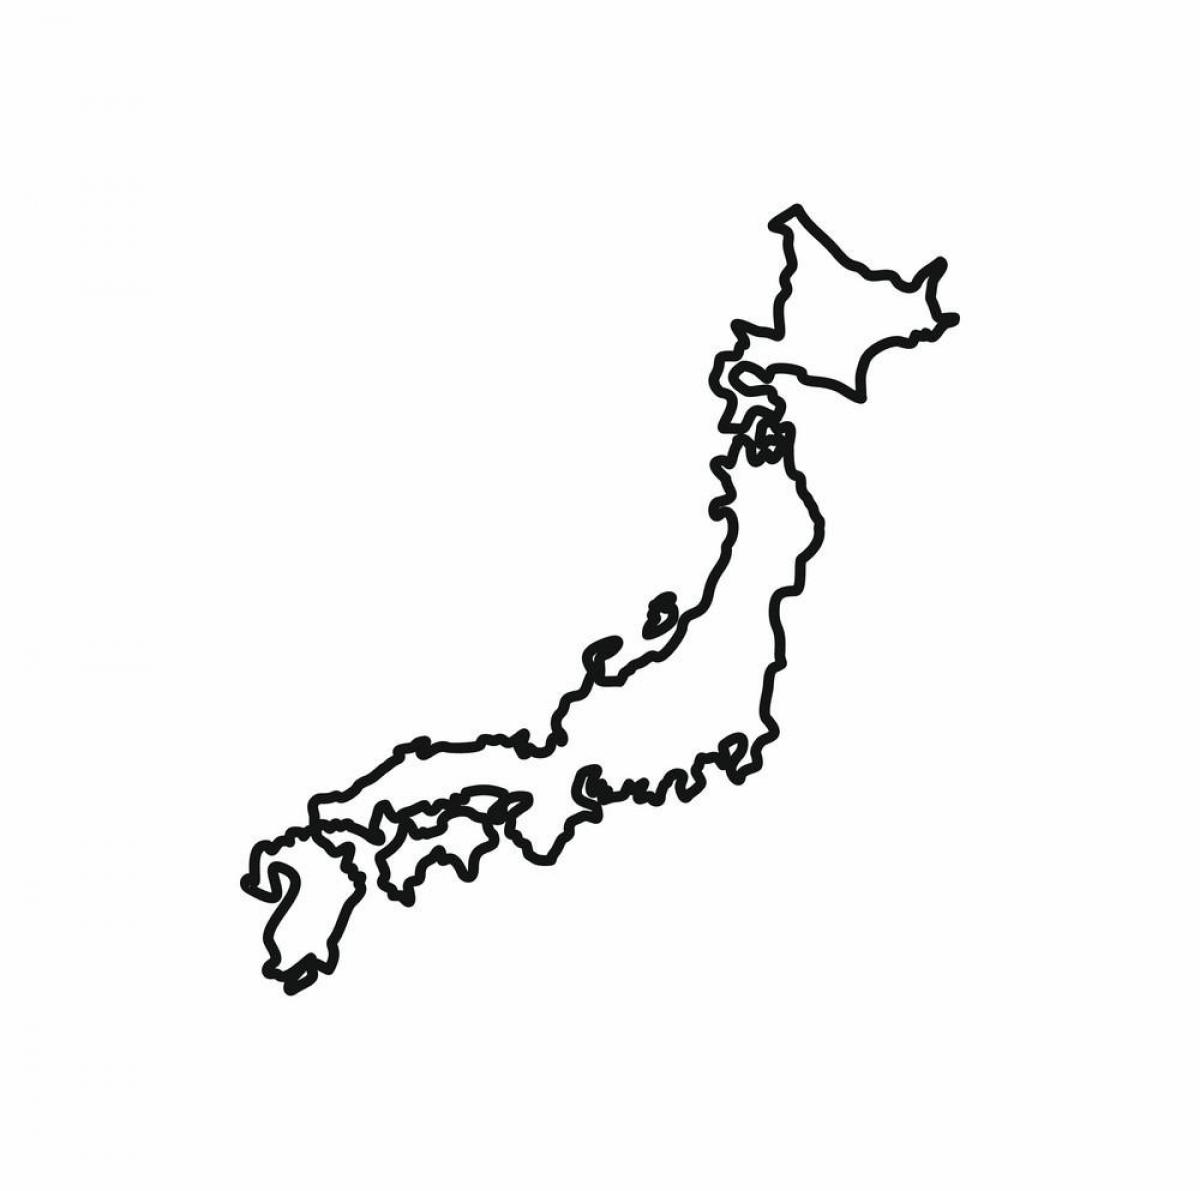 Japan contours map